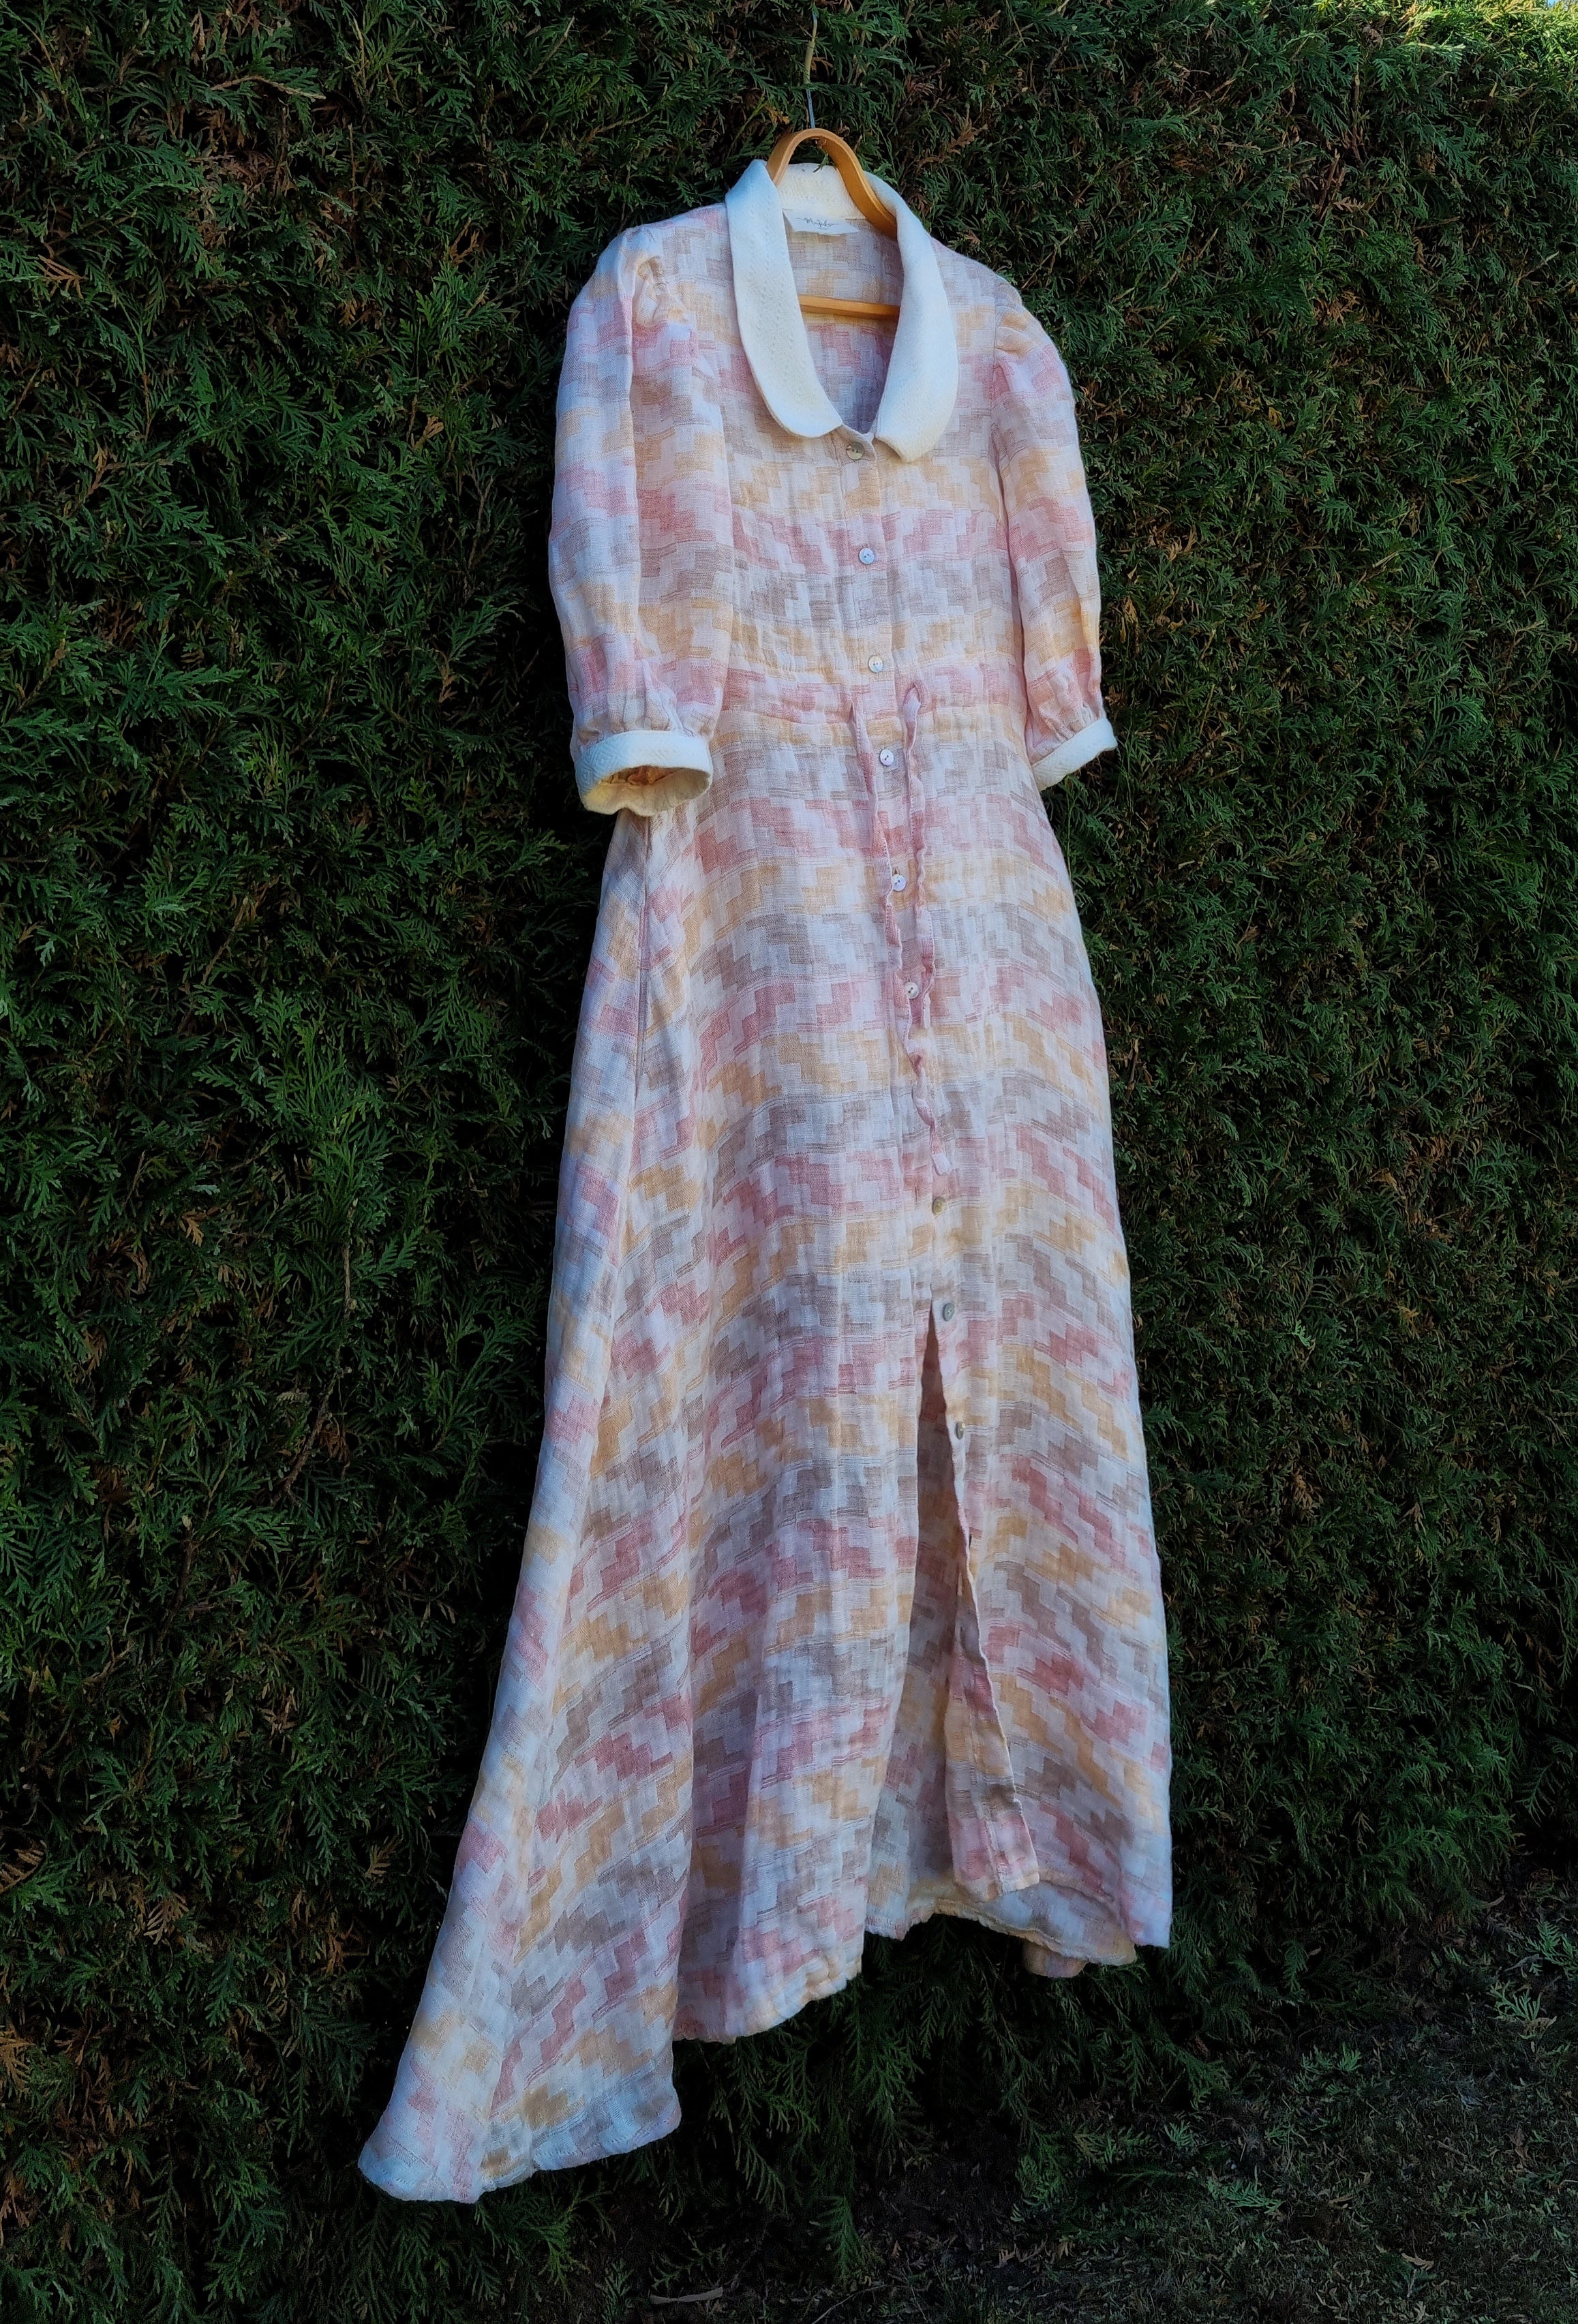 Clarabelle sunny dress